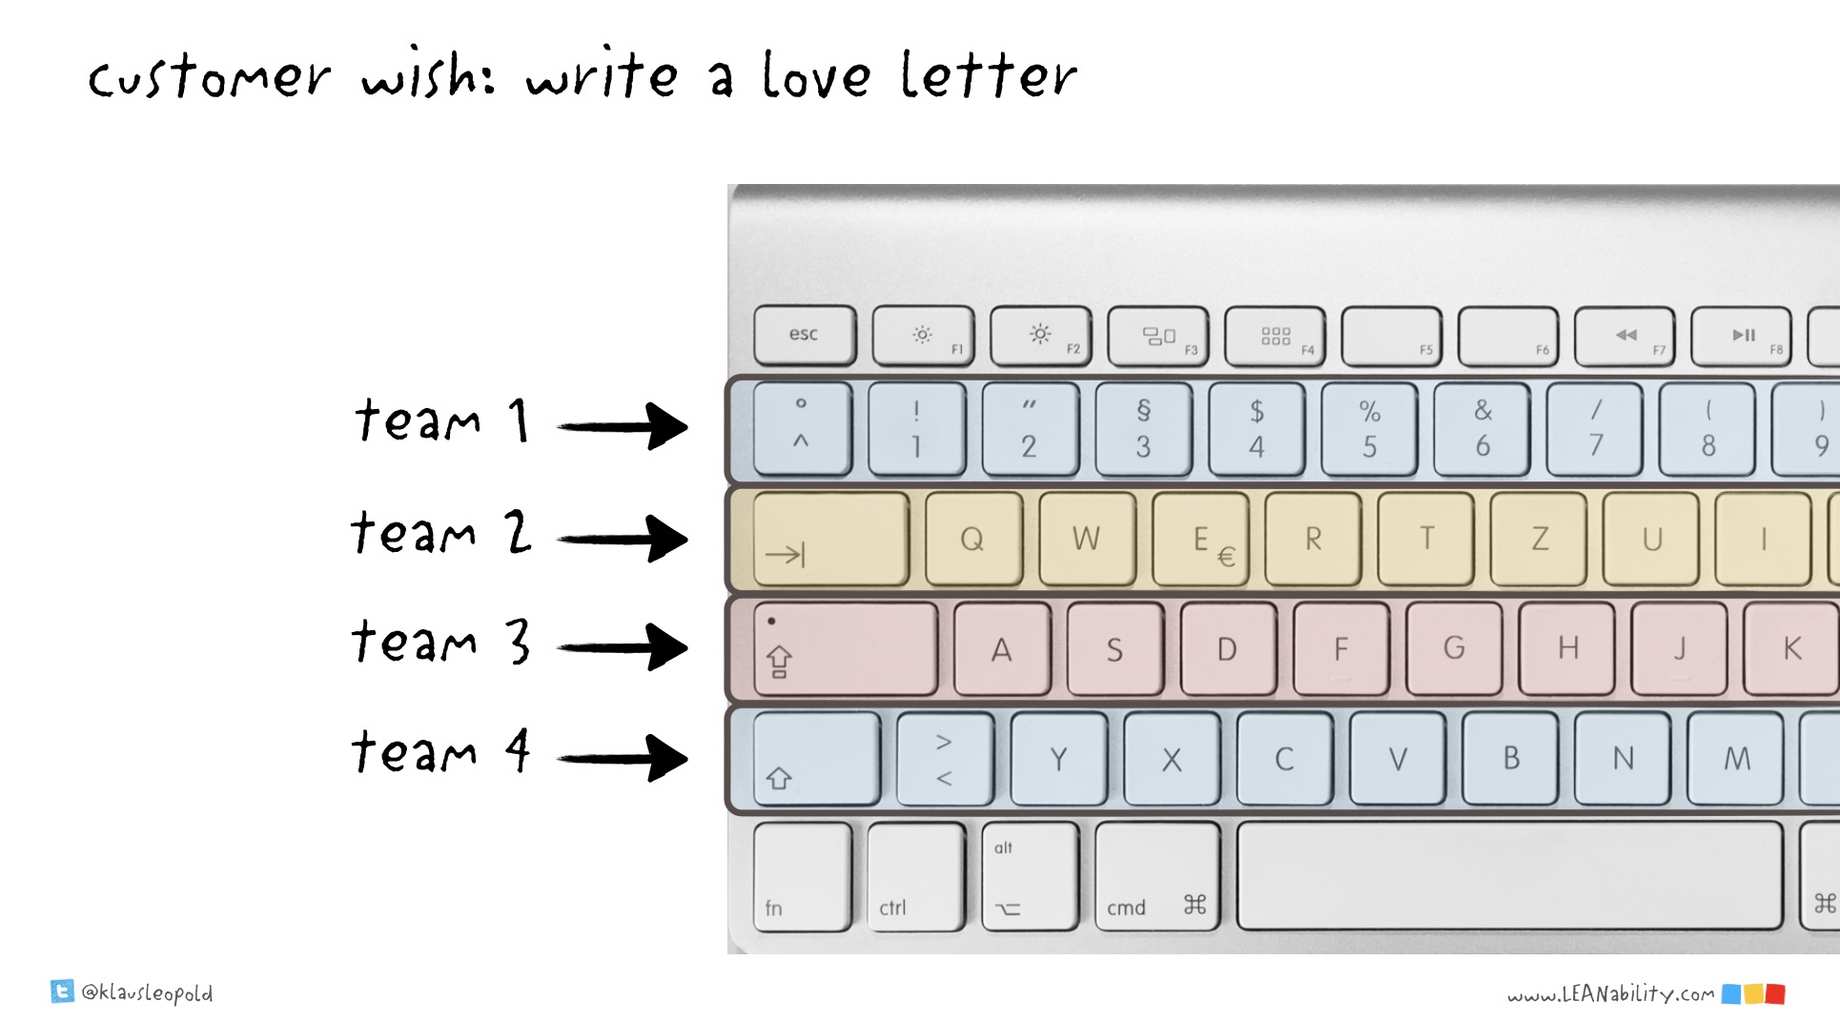 Skizze einer Tastatur. Jede Buchstaben-Zeile steht für die Aufgaben eines Teams und hat eine eigene Farbe. Die Aufgabe ist es, einen Liebesbrief zu schreiben. Die Skizze ist von Klaus Leopold.